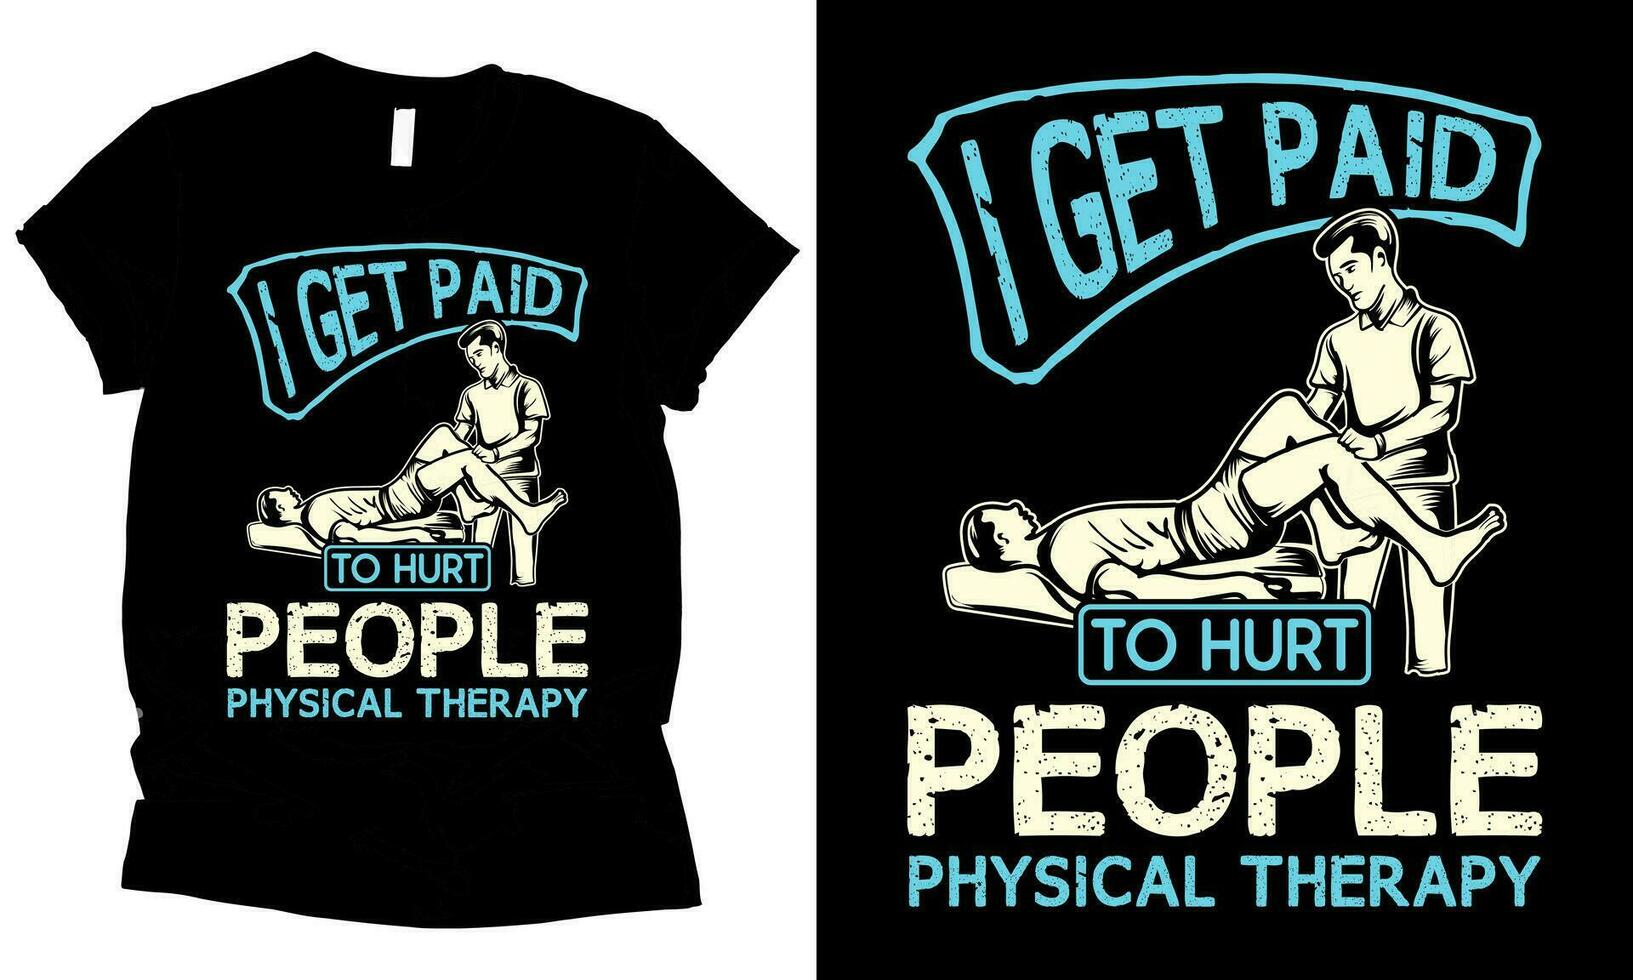 physique thérapie je avoir payé à blesser gens santé vecteur T-shirt conception.